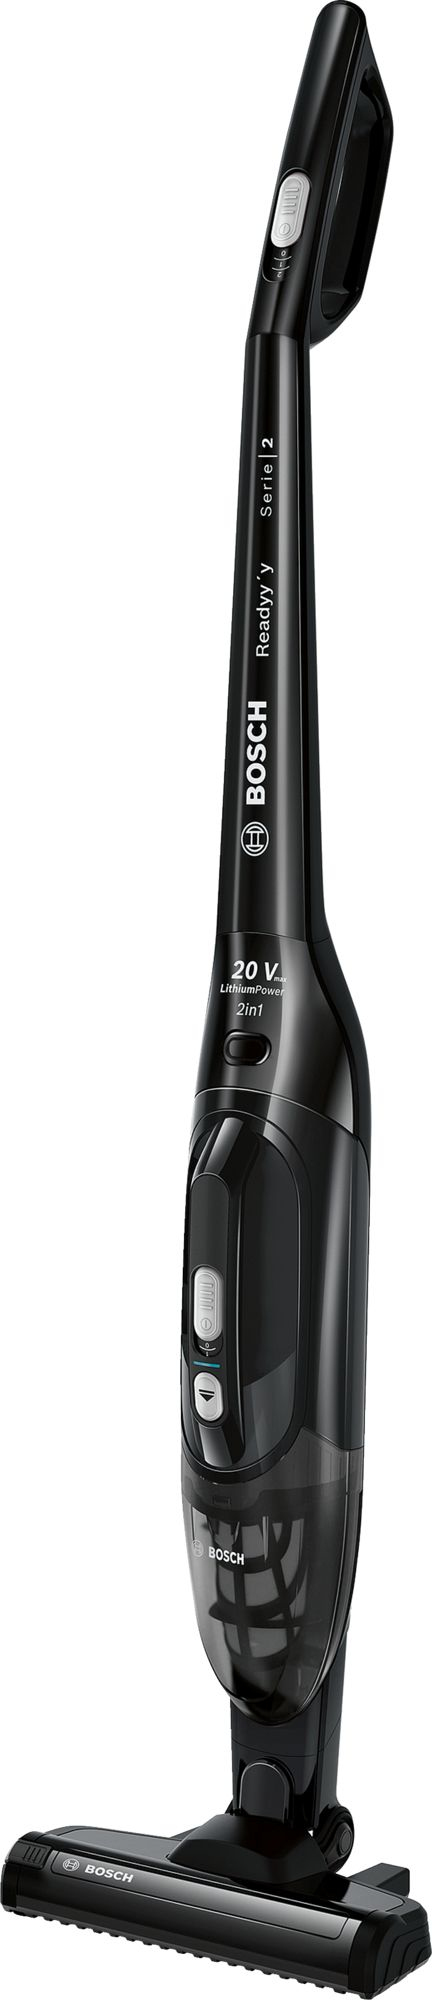 Bosch Serie 6 BCHF220B zwart